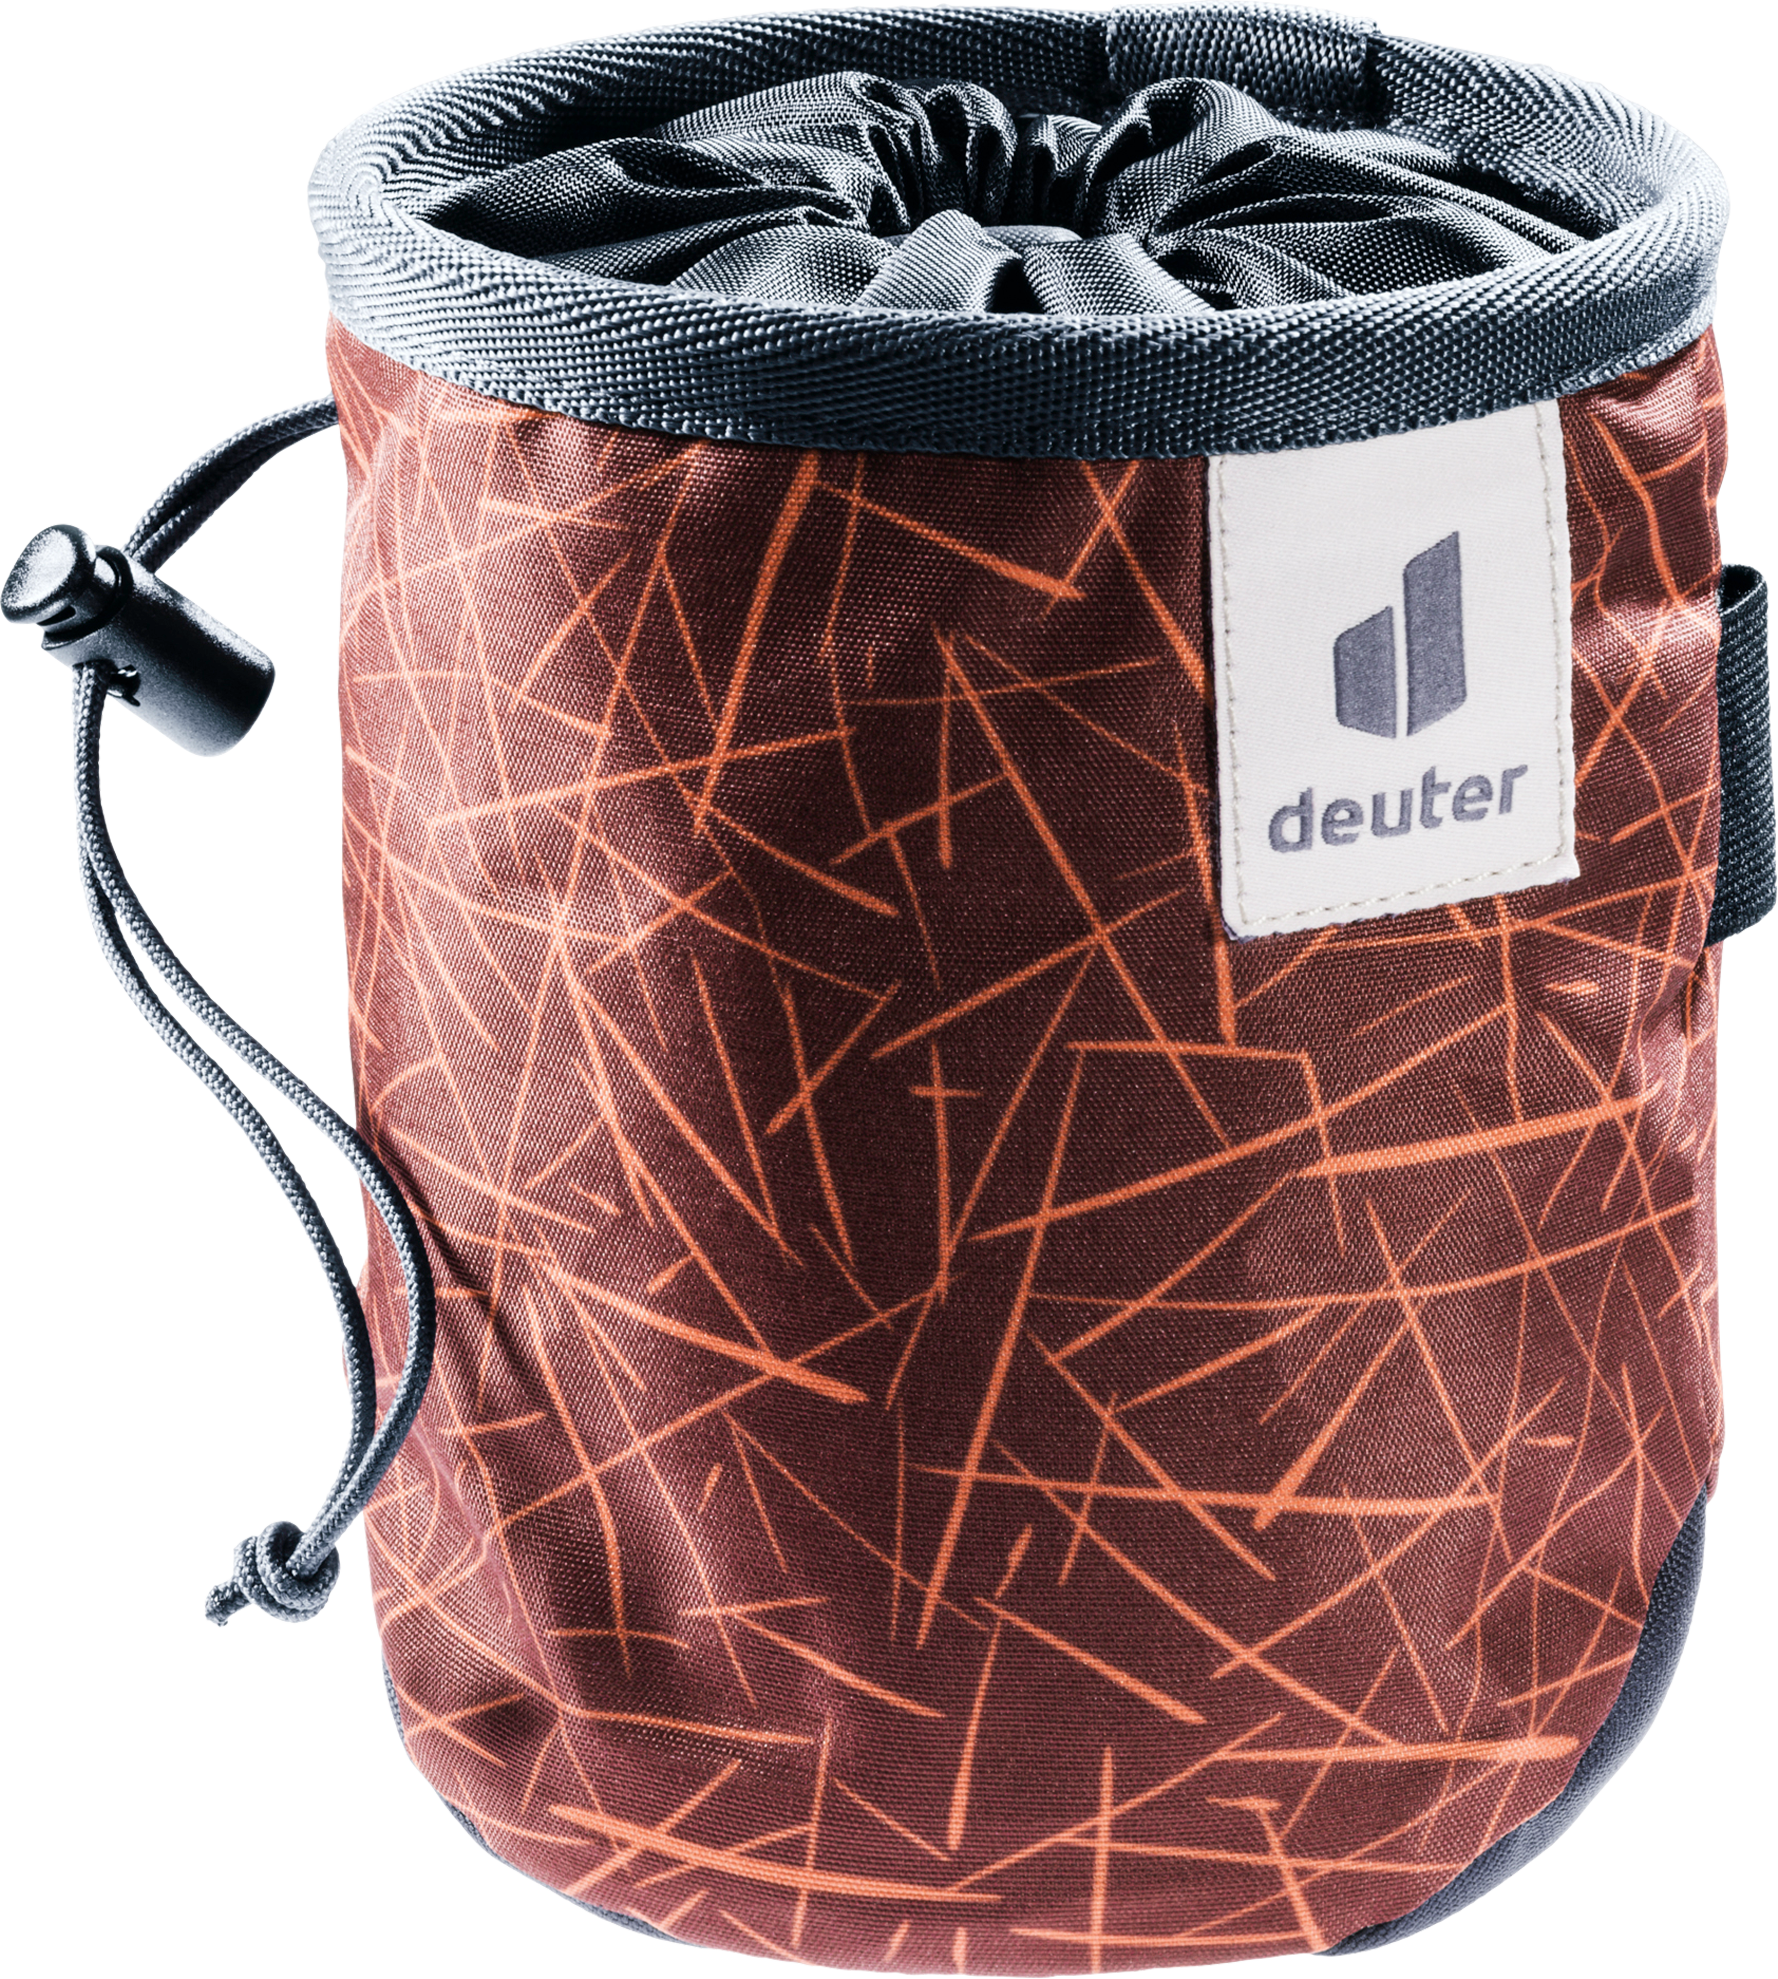 Deuter Gravity Chalk Bag I Klettertasche 0,8 Liter redwood scratches graphite